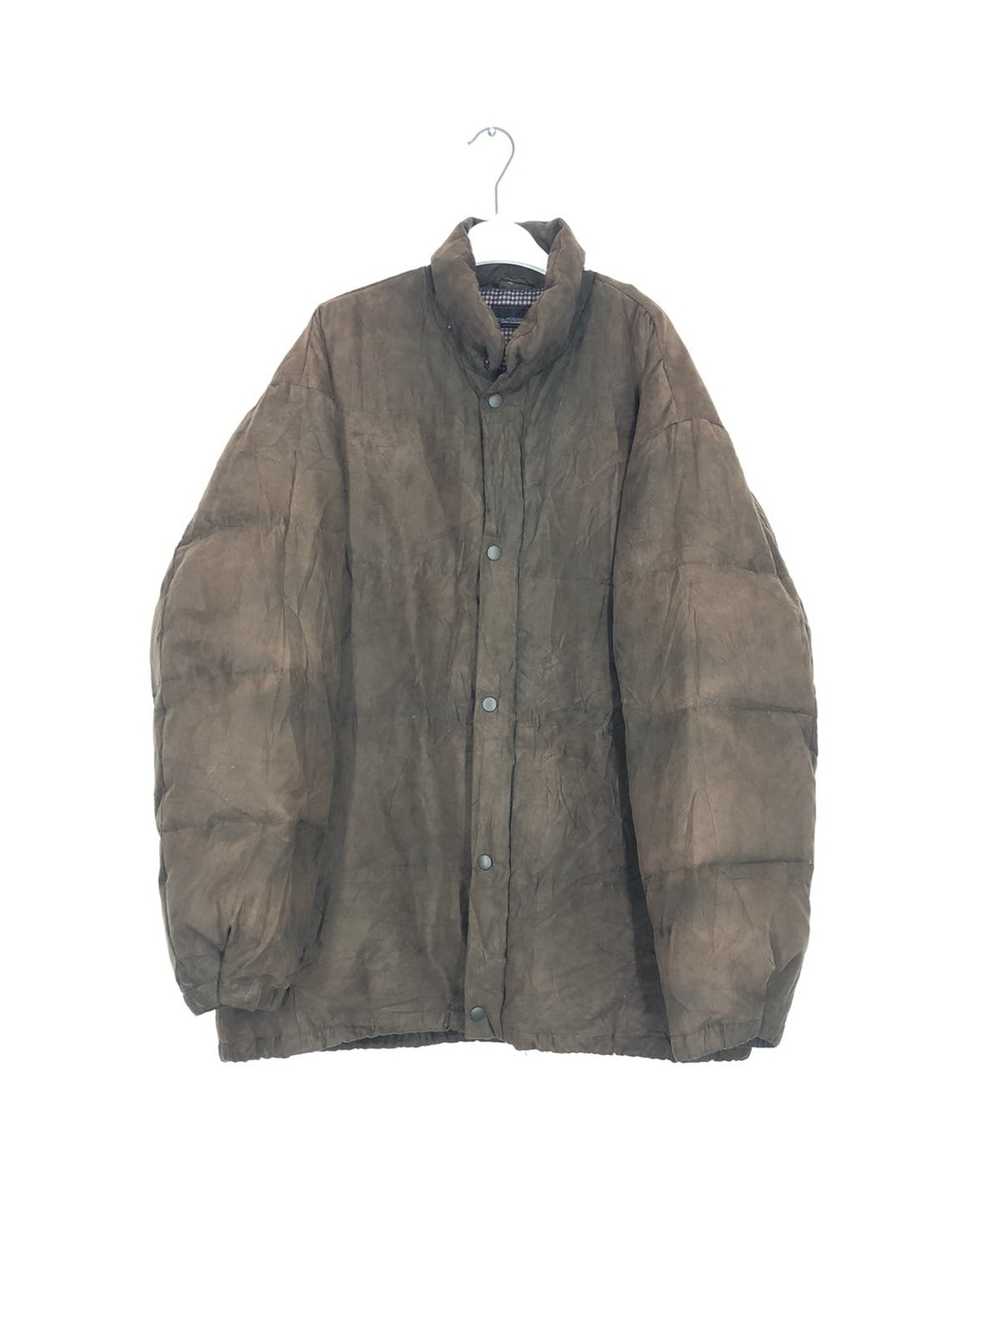 Mr. Junko × Vintage mr junko puffer jacket - image 1